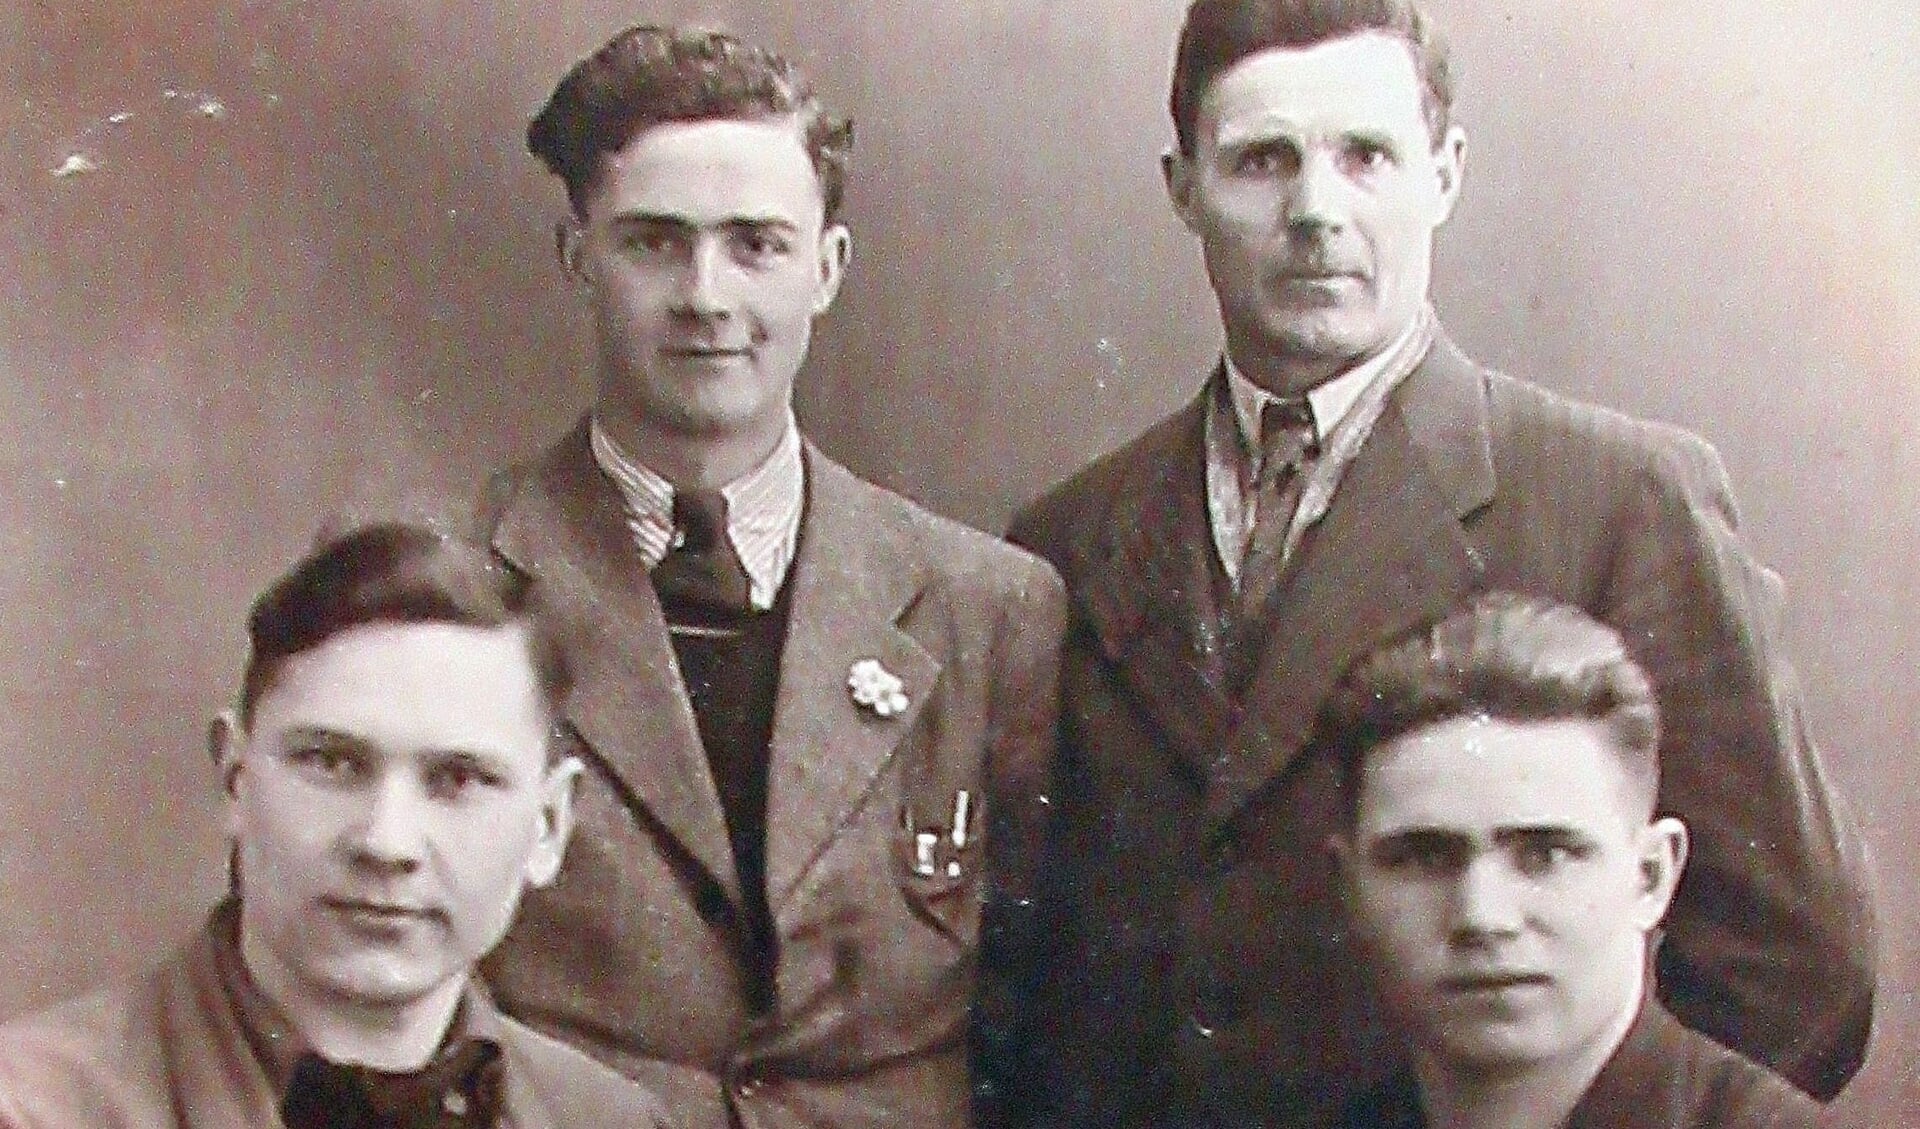 Vooraan Andrej en Sasjka. Op de achtergrond vader en zoon Belterman.